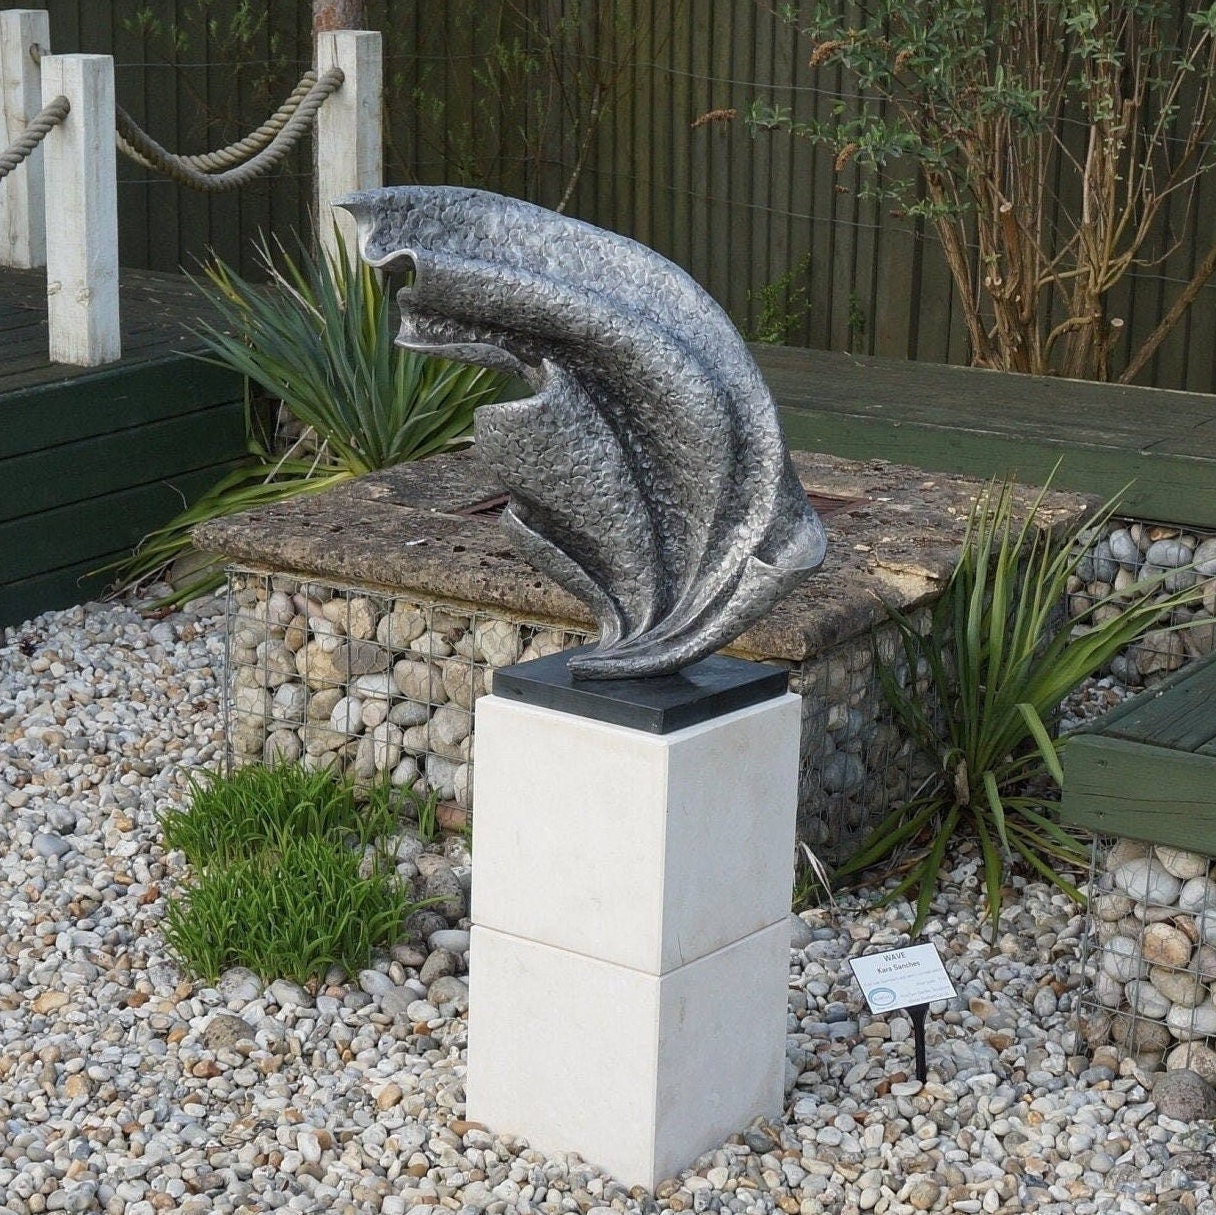 Curvation Modern Art Stone Statue - Large Garden Sculpture